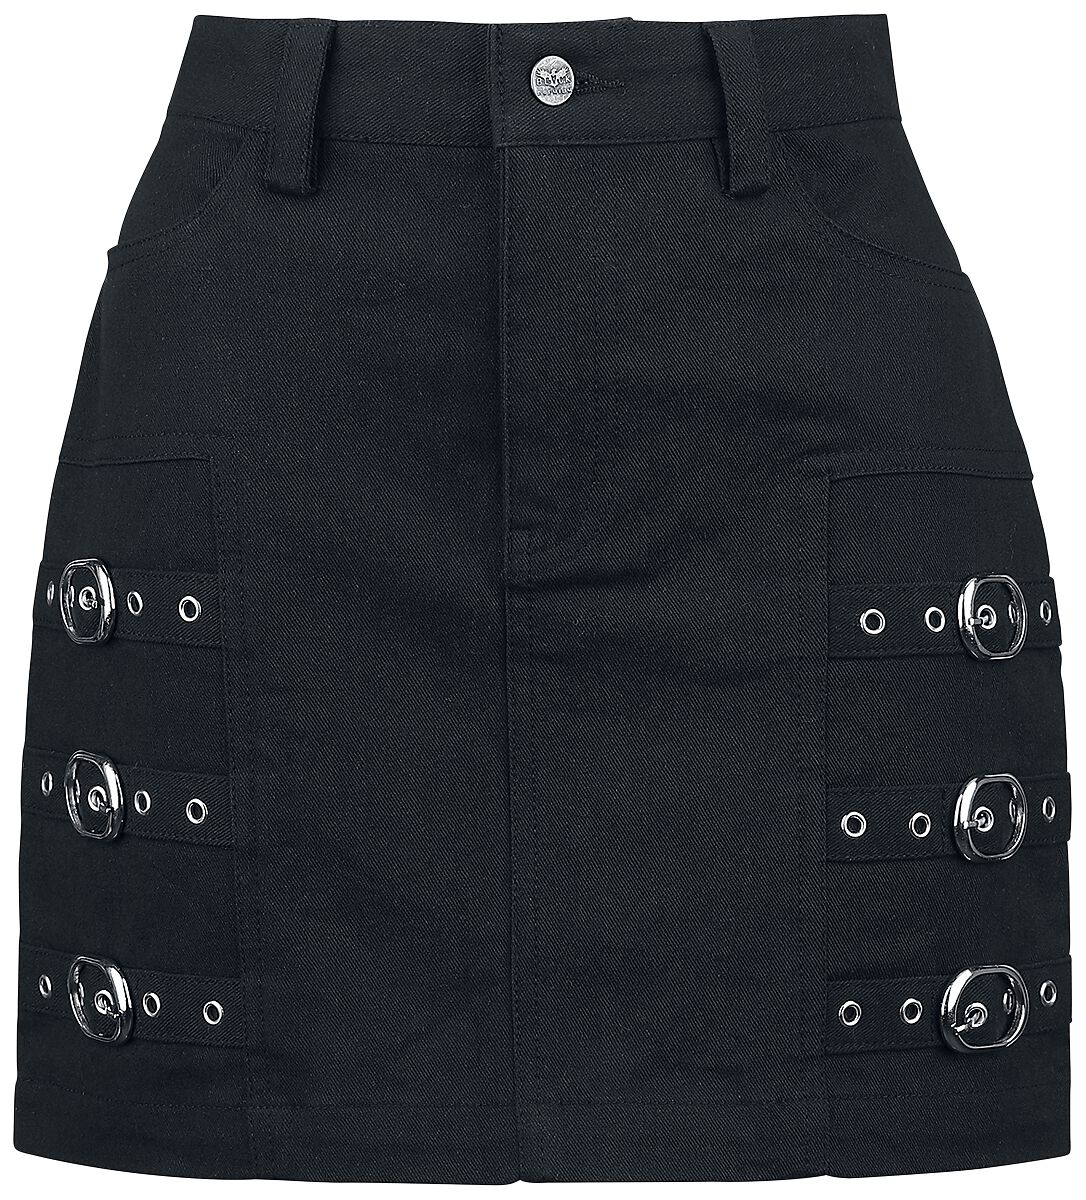 Black Premium by EMP Kurzer Rock - Short Skirt with decorative Buckles - S bis XXL - für Damen - Größe L - schwarz